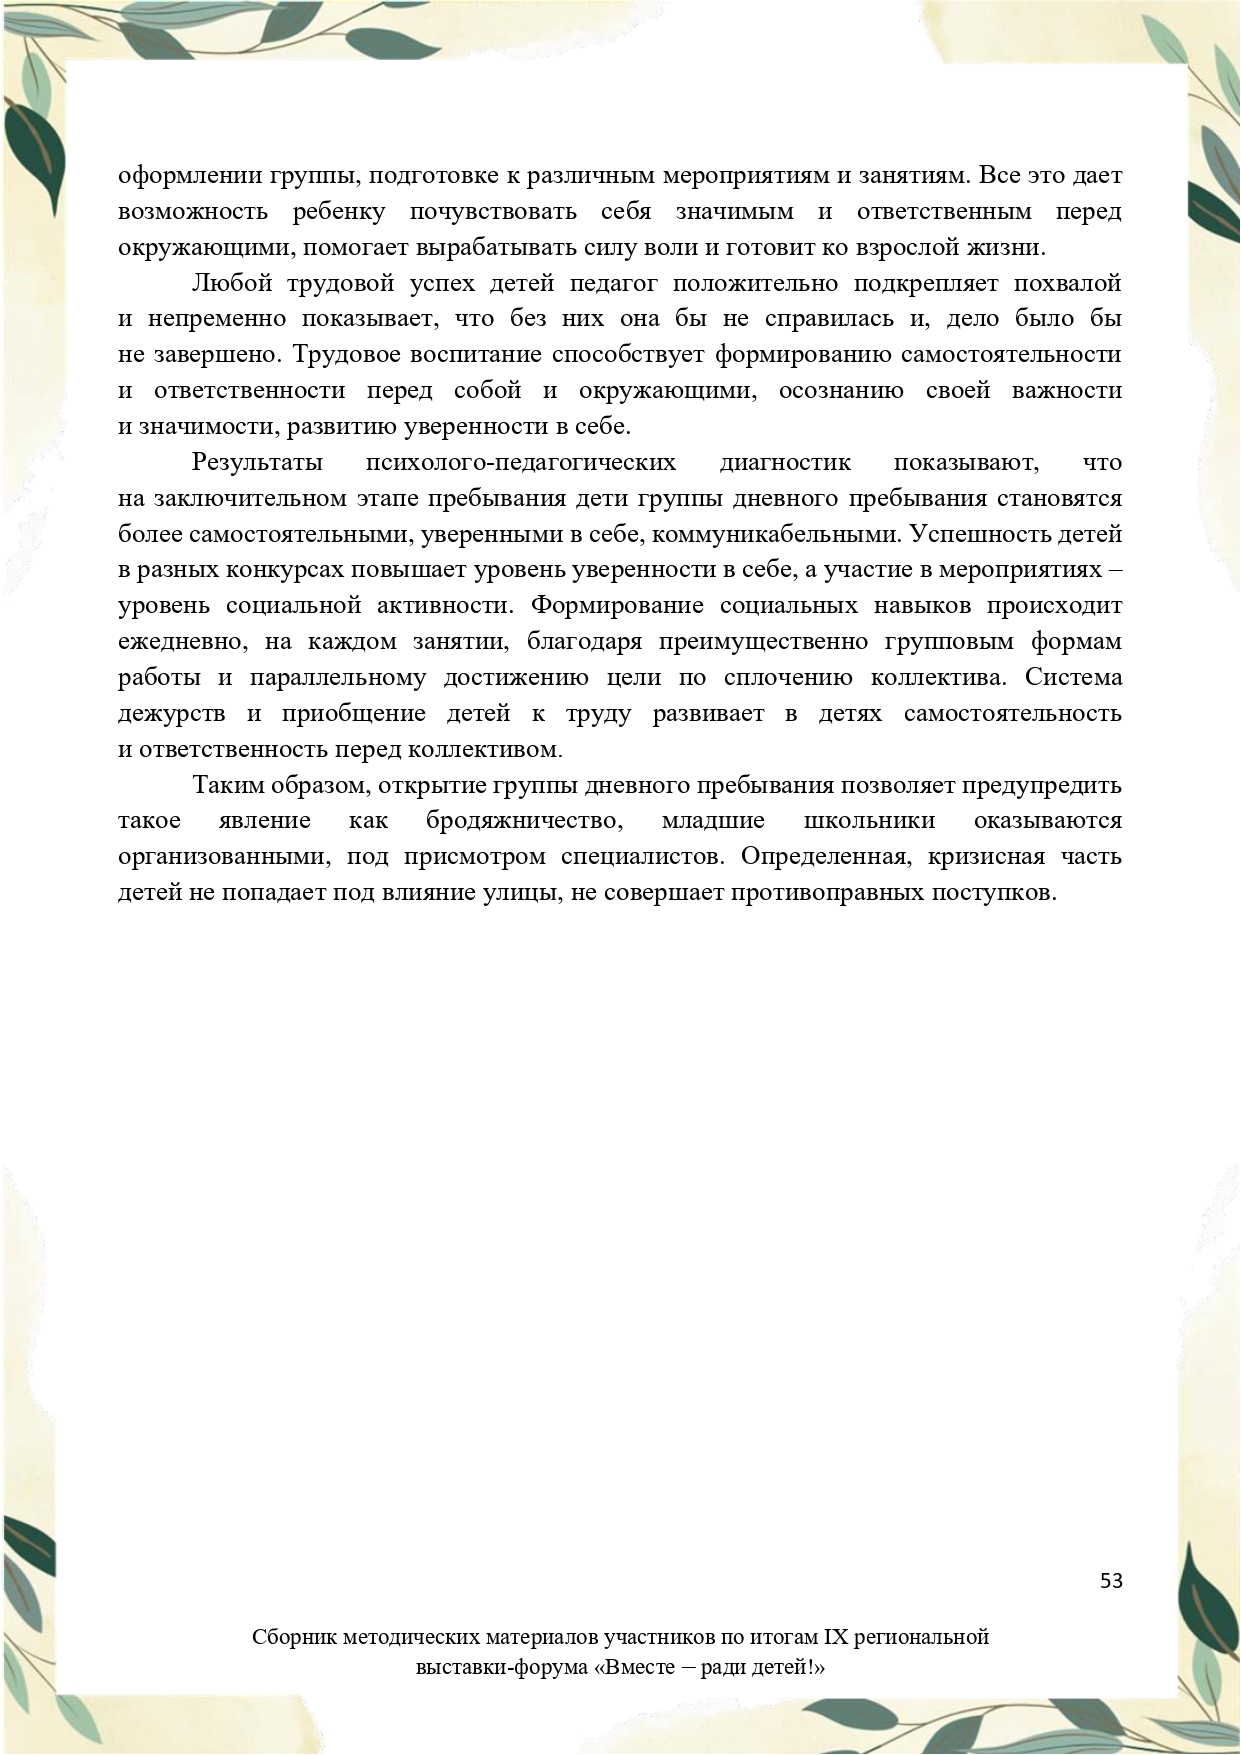 Sbornik_metodicheskikh_materialov_uchastnikov_IX_regionalnoy_vystavki-foruma_Vmeste__radi_detey_33__2023_page-0053